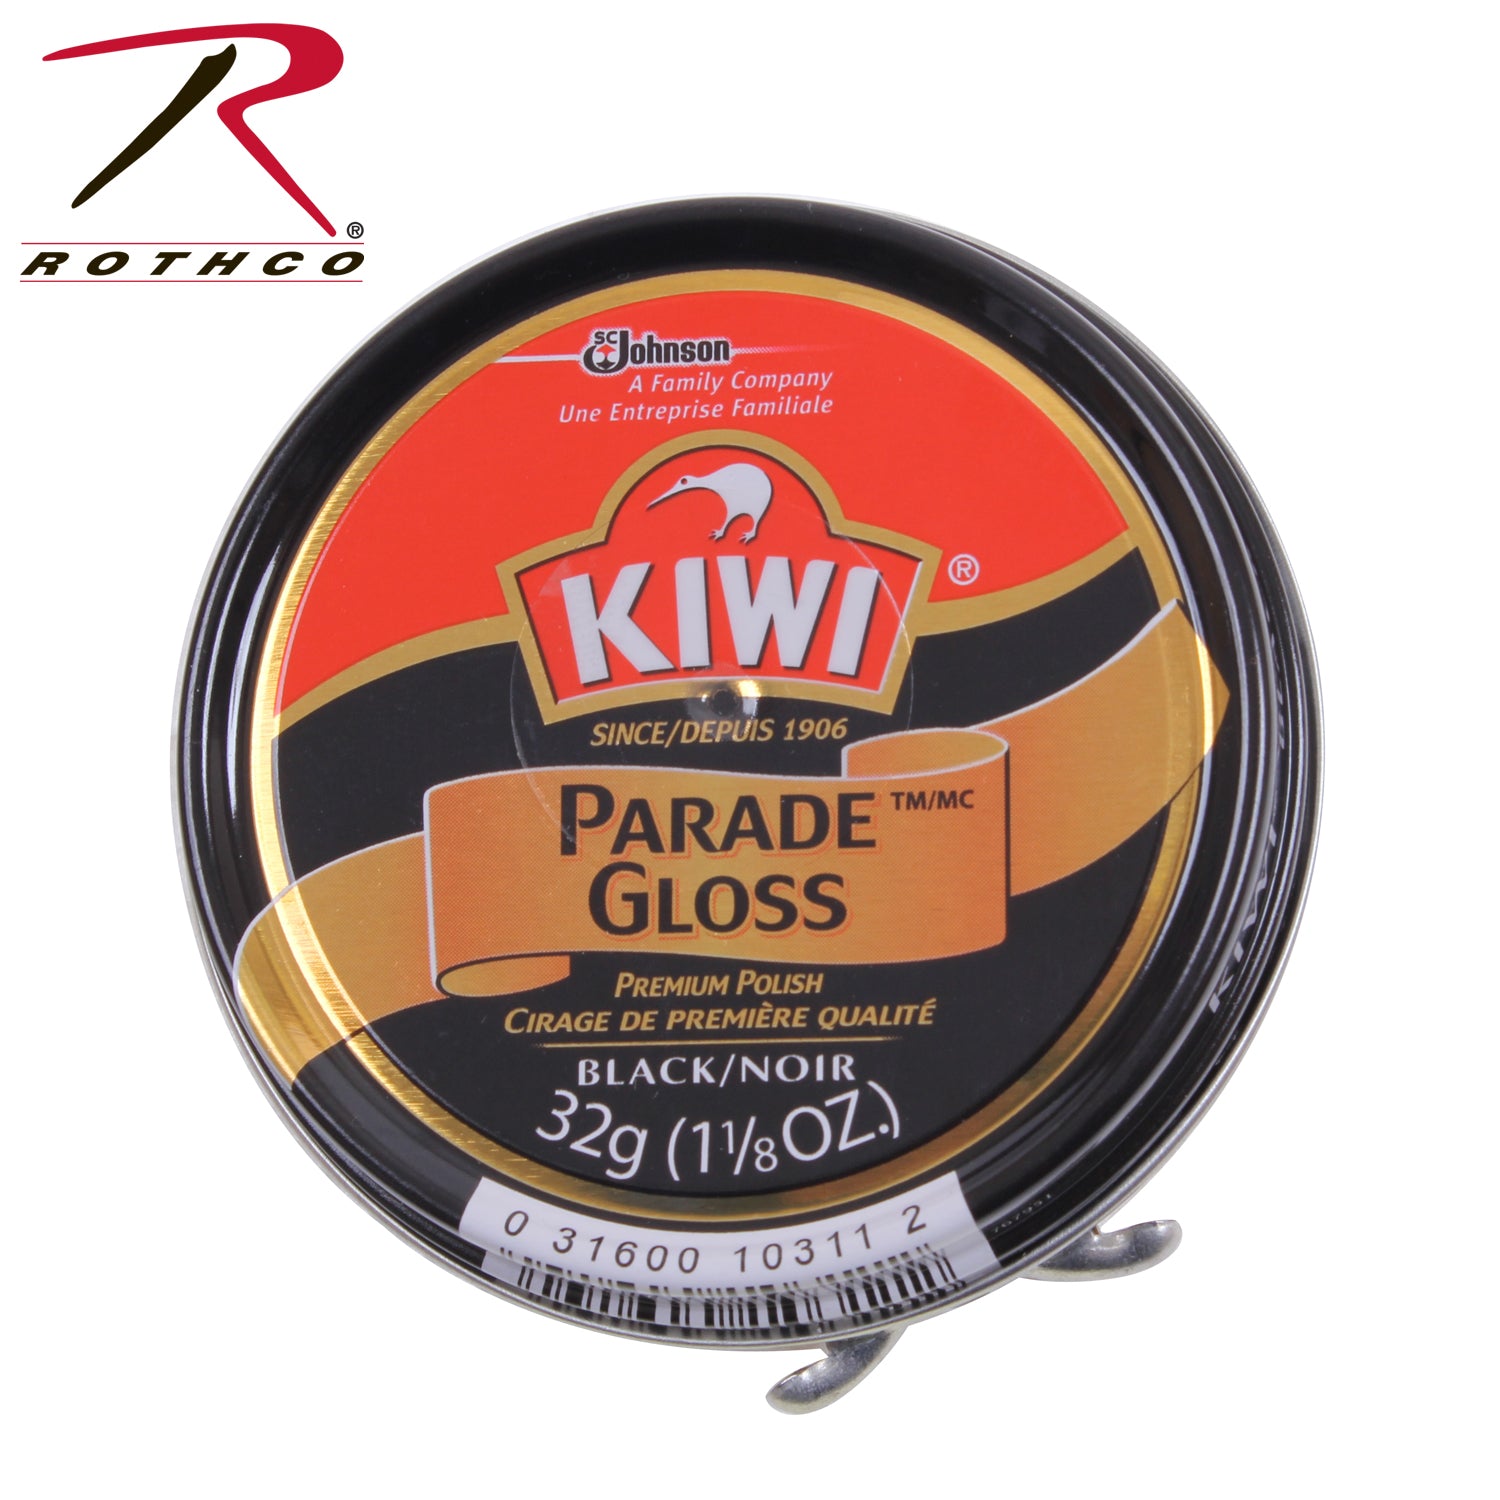 Rothco Kiwi Parade Gloss